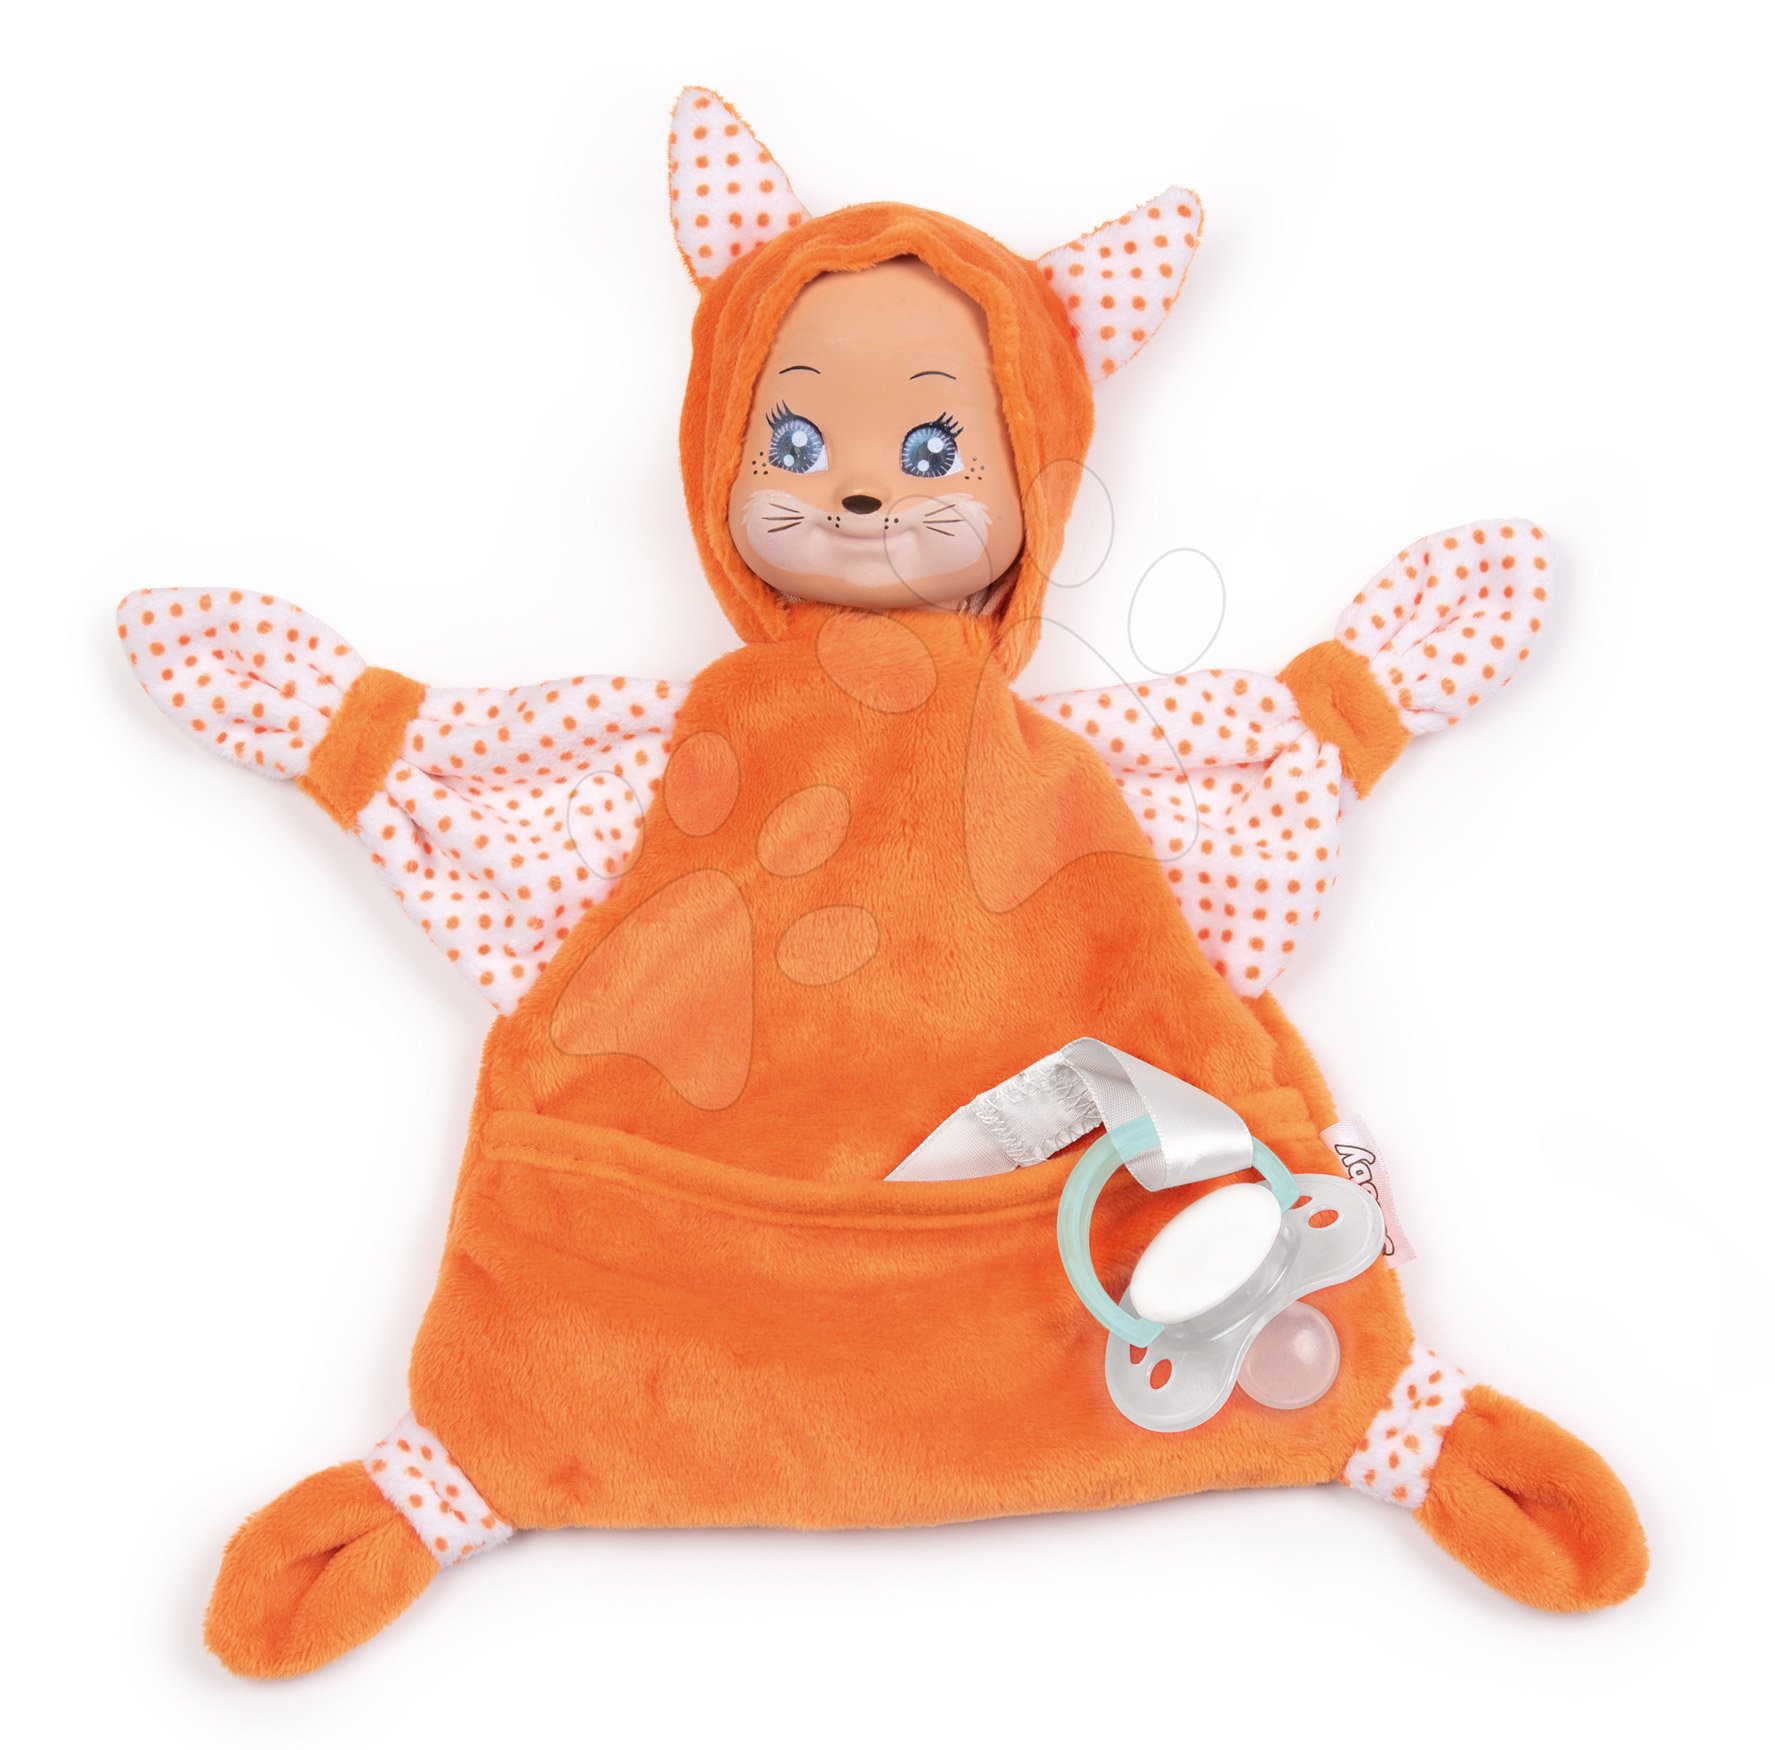 Róka dédelgetéshez Animal Doll Minikiss Smoby 20 cm pihe-puha textilanyagból 0 hó-tól